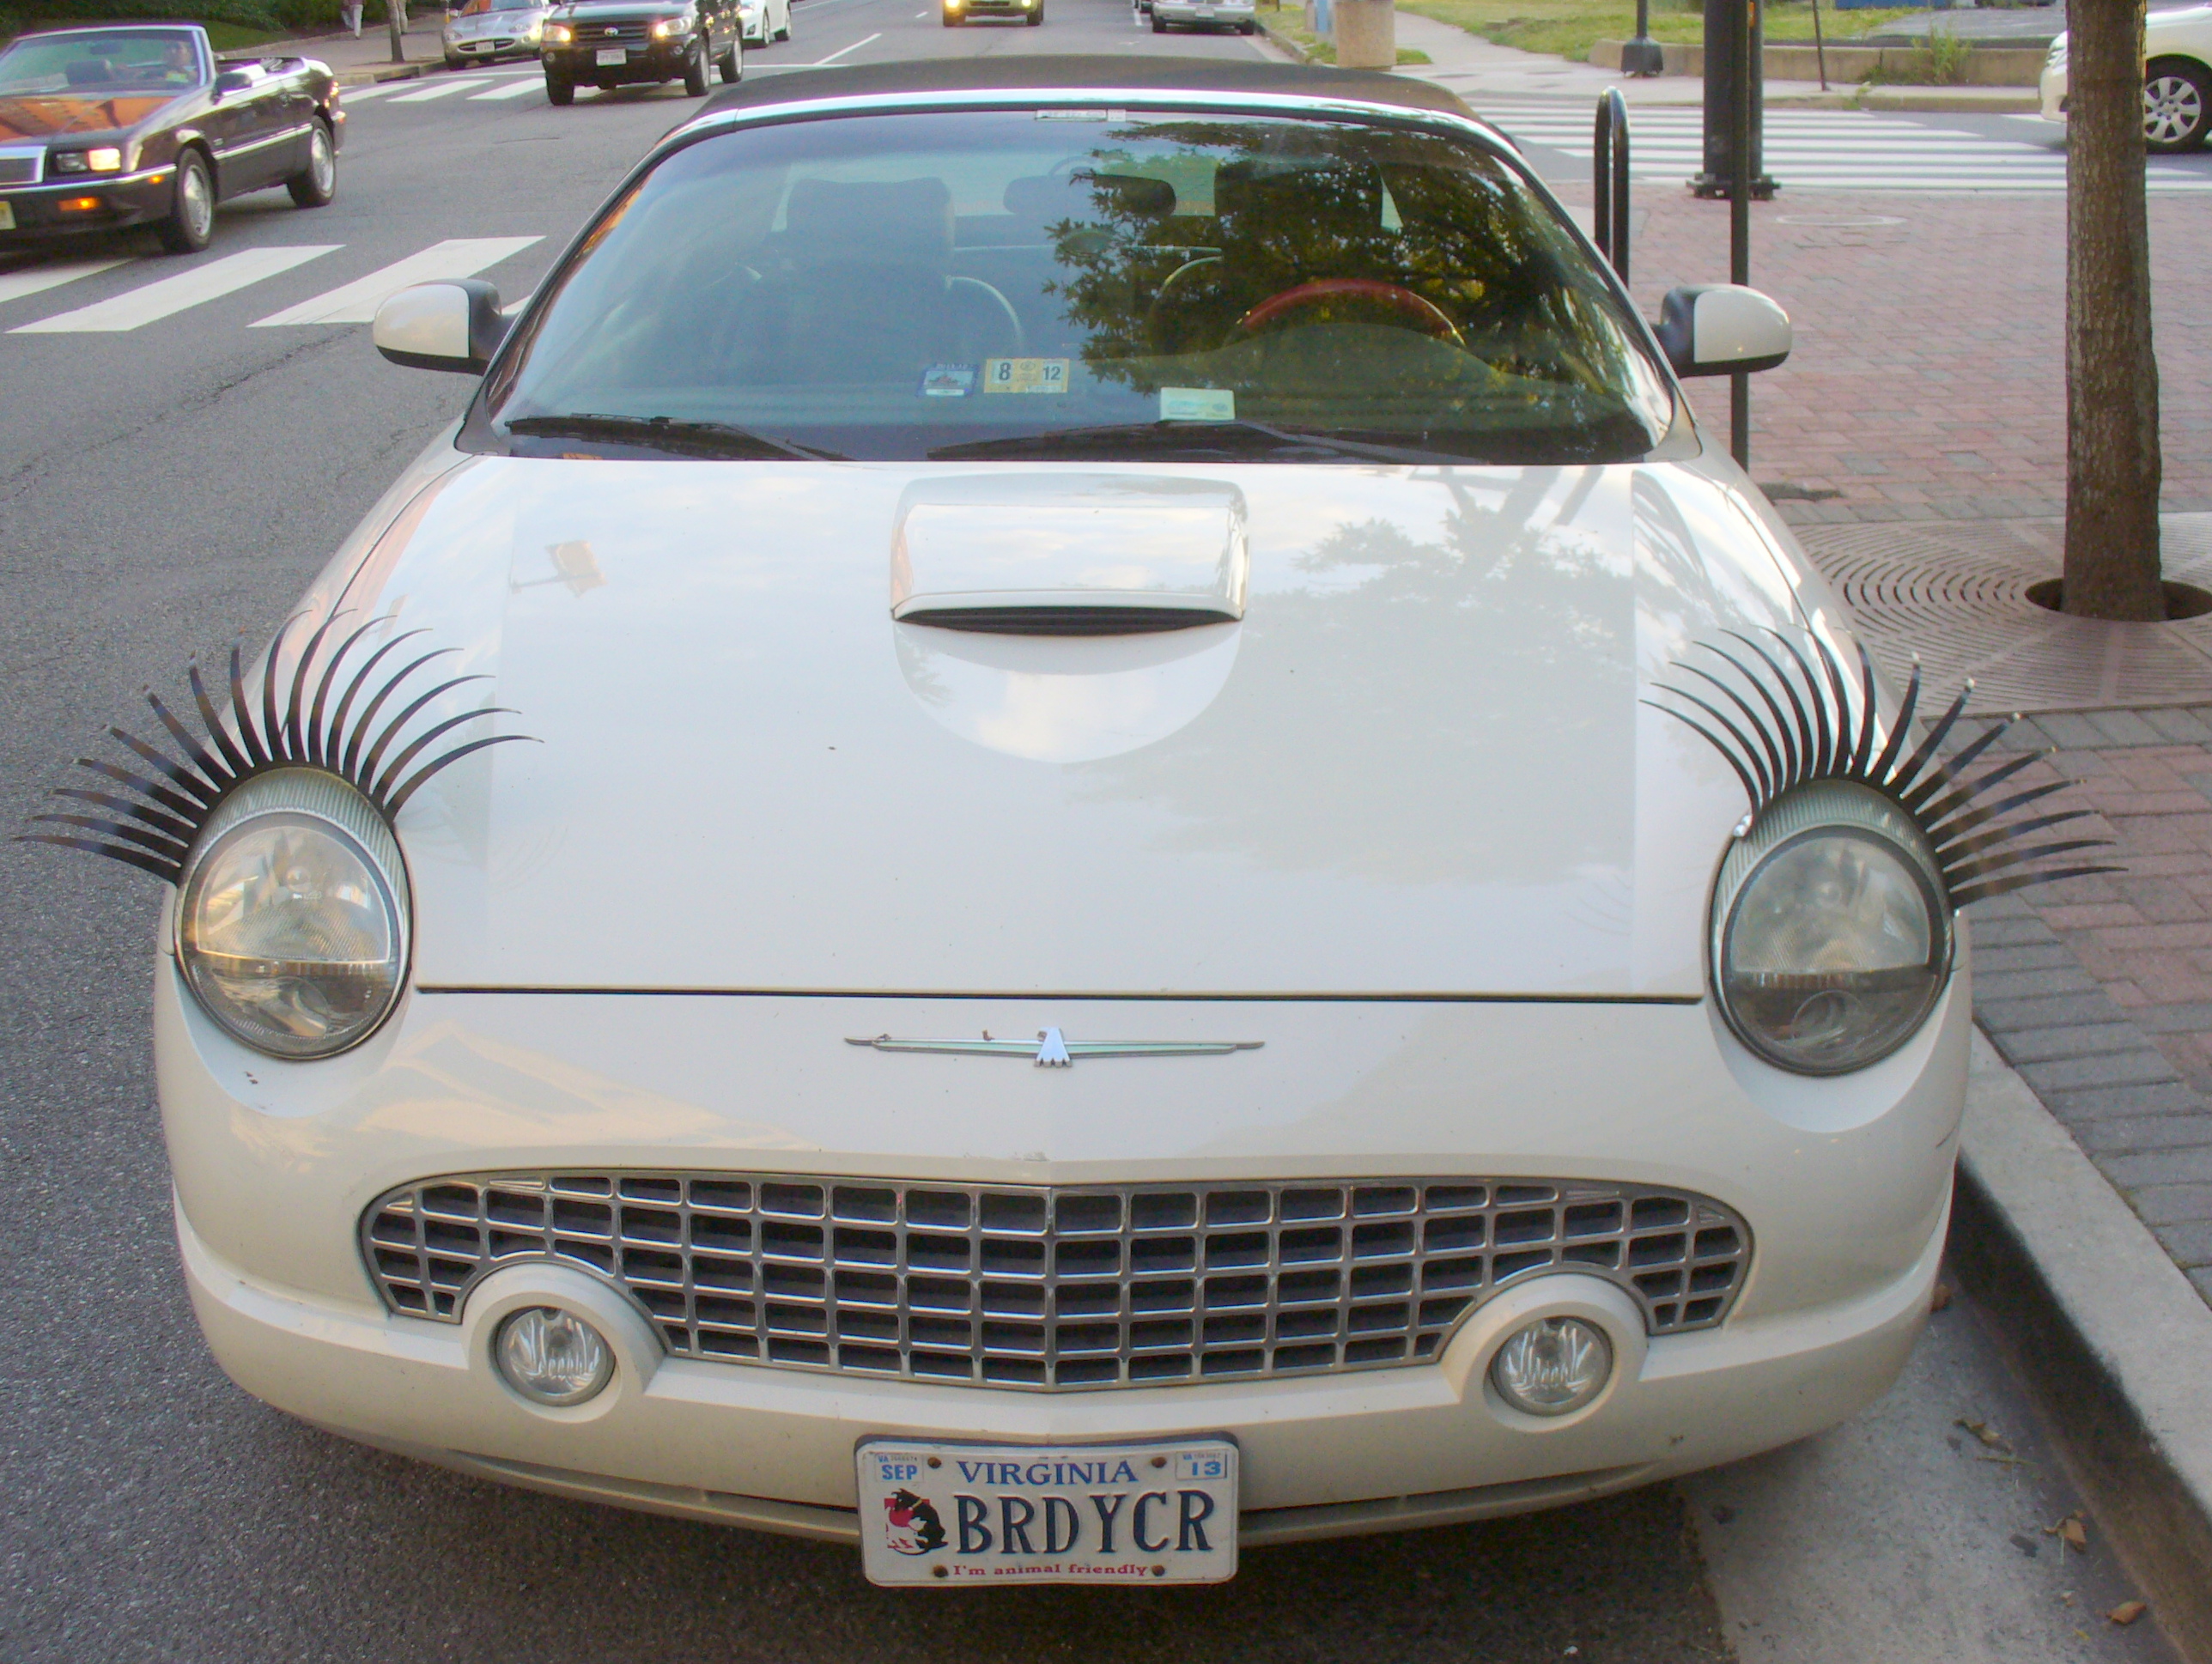 Car With Eyelashes